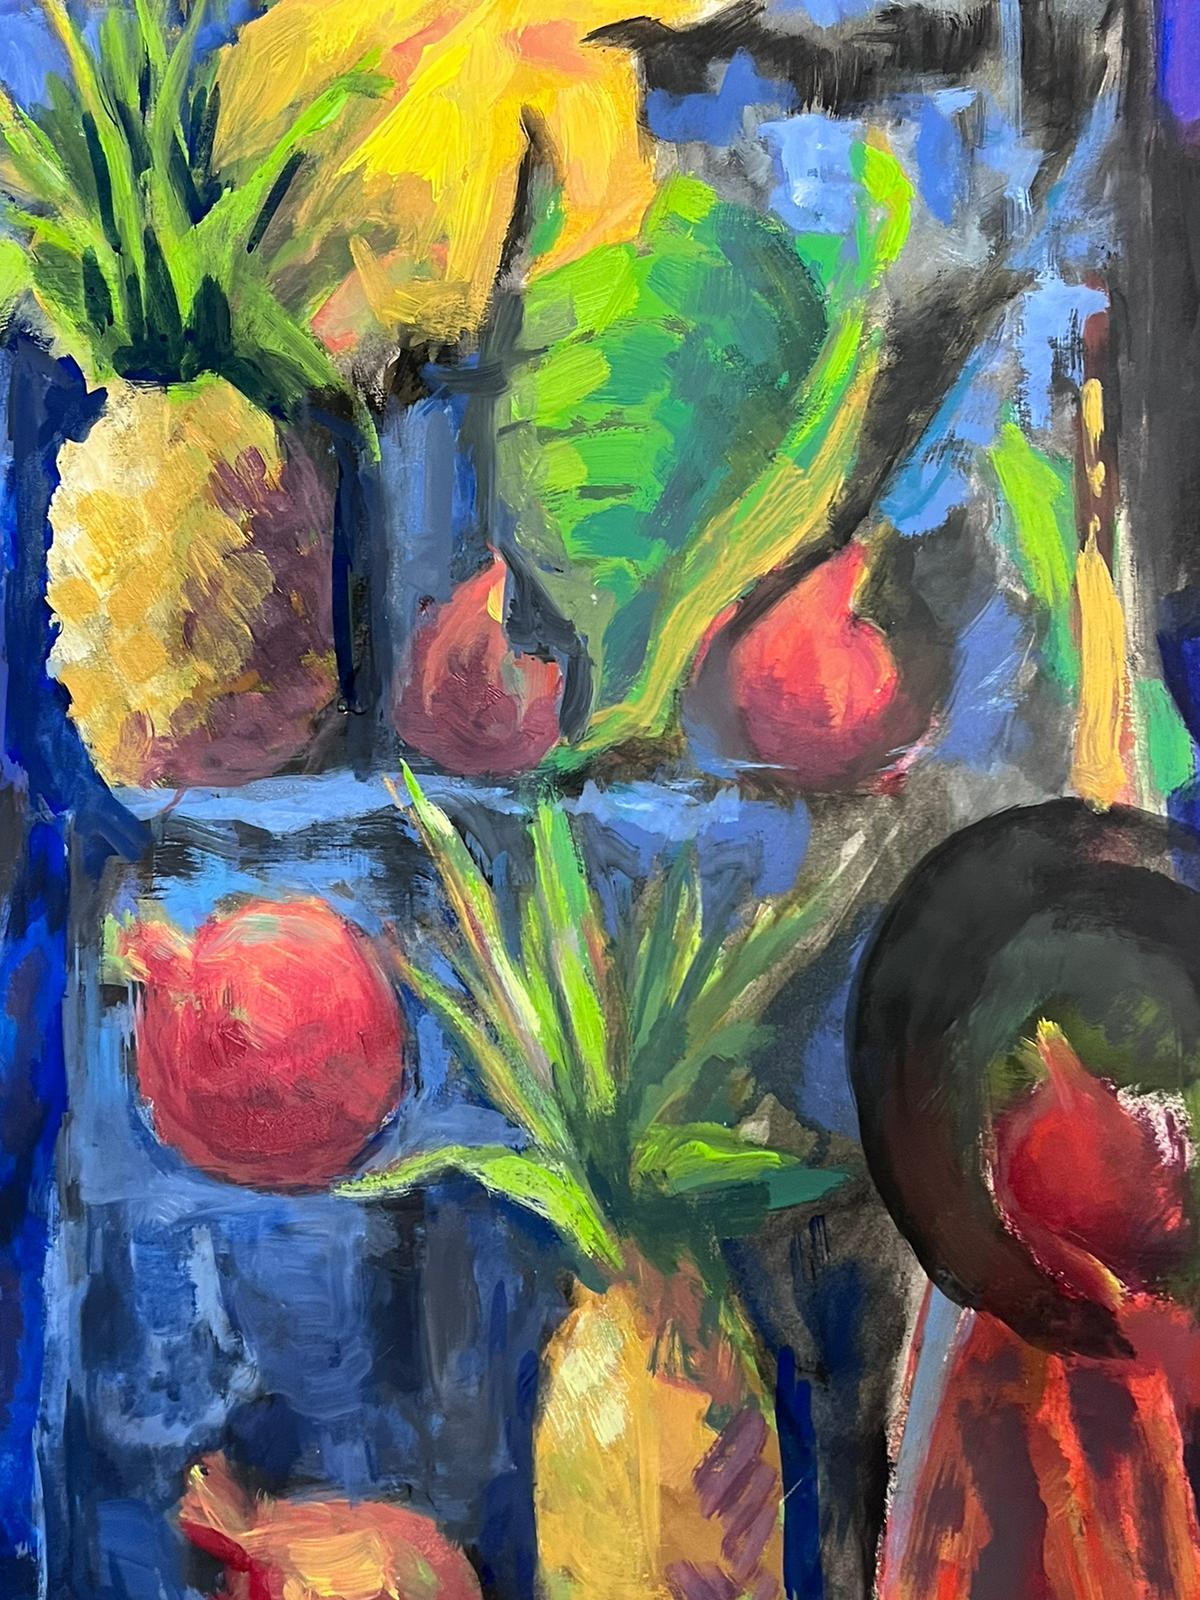 Ananas
von Guy Nicod
(Französisch 1923 - 2021)
Öl auf Künstlerpapier, ungerahmt
verso gestempelt
Gemälde : 24 x 20 Zoll
Herkunft: Künstlernachlass, Frankreich
Zustand: sehr guter und gesunder Zustand